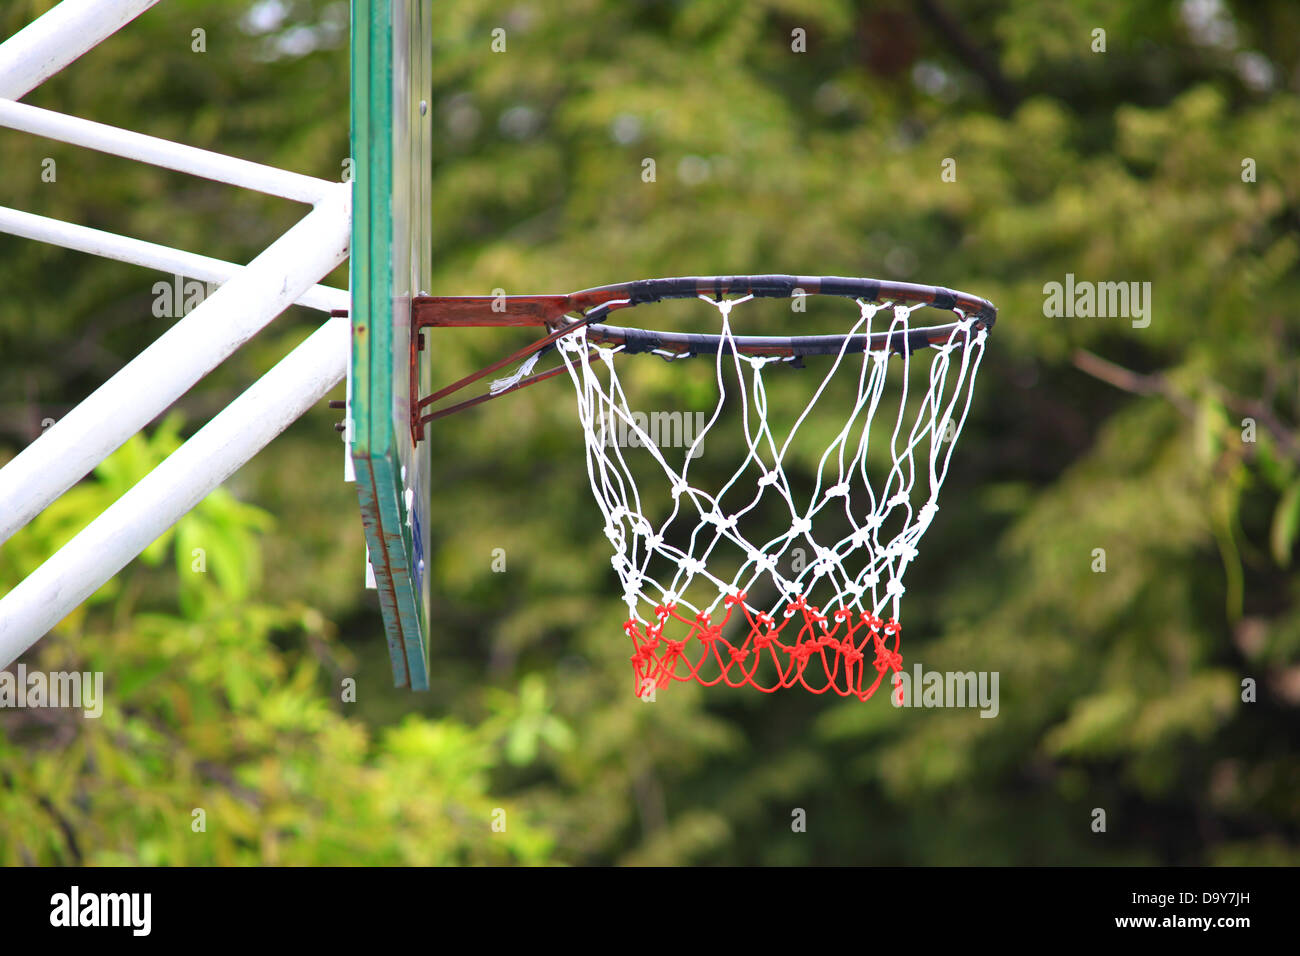 basketball hoop Stock Photo